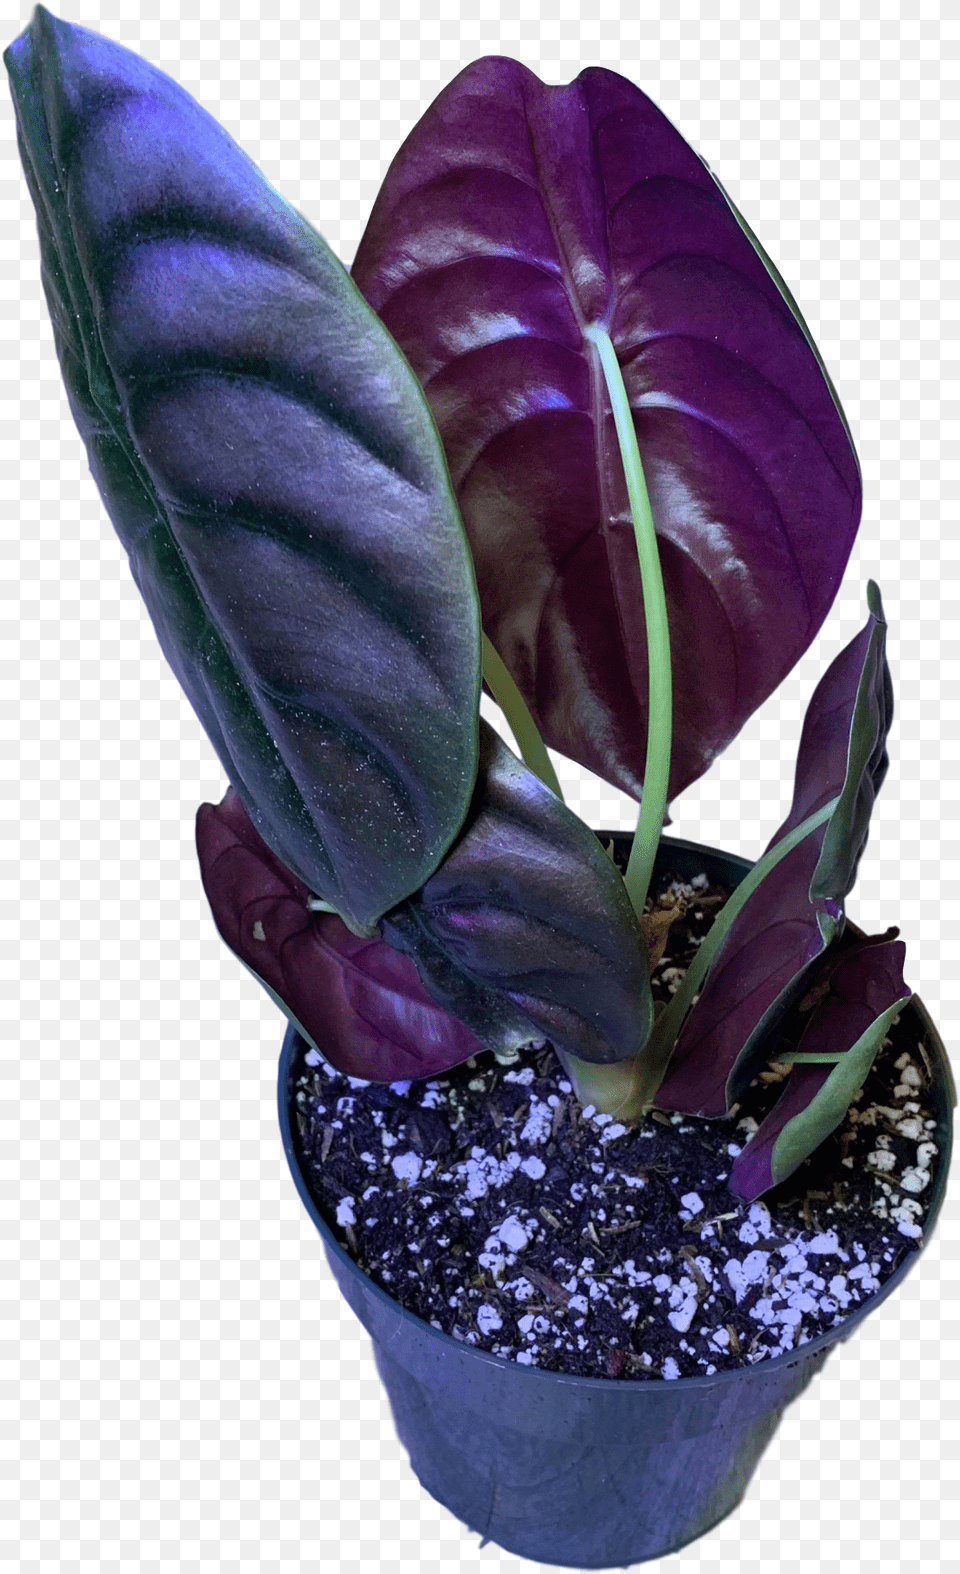 African Violets Transparent Image Plants, Flower, Leaf, Plant, Flower Arrangement Free Png